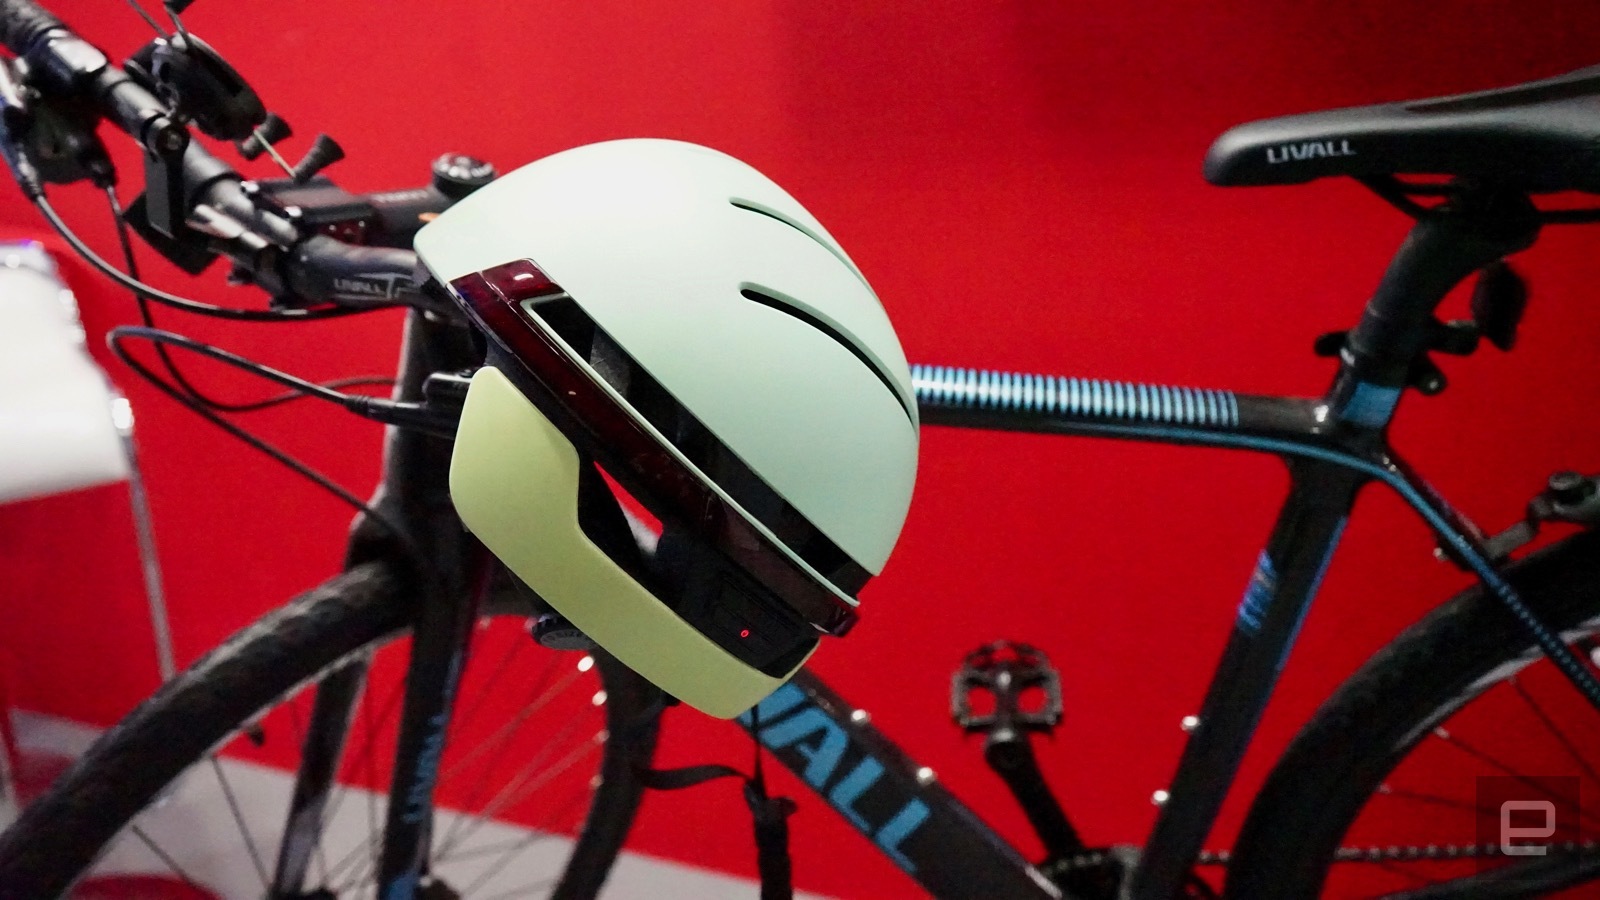 Conheça “BH51 da Livall” o supercapacete smart para bike que vai lhe conquistar